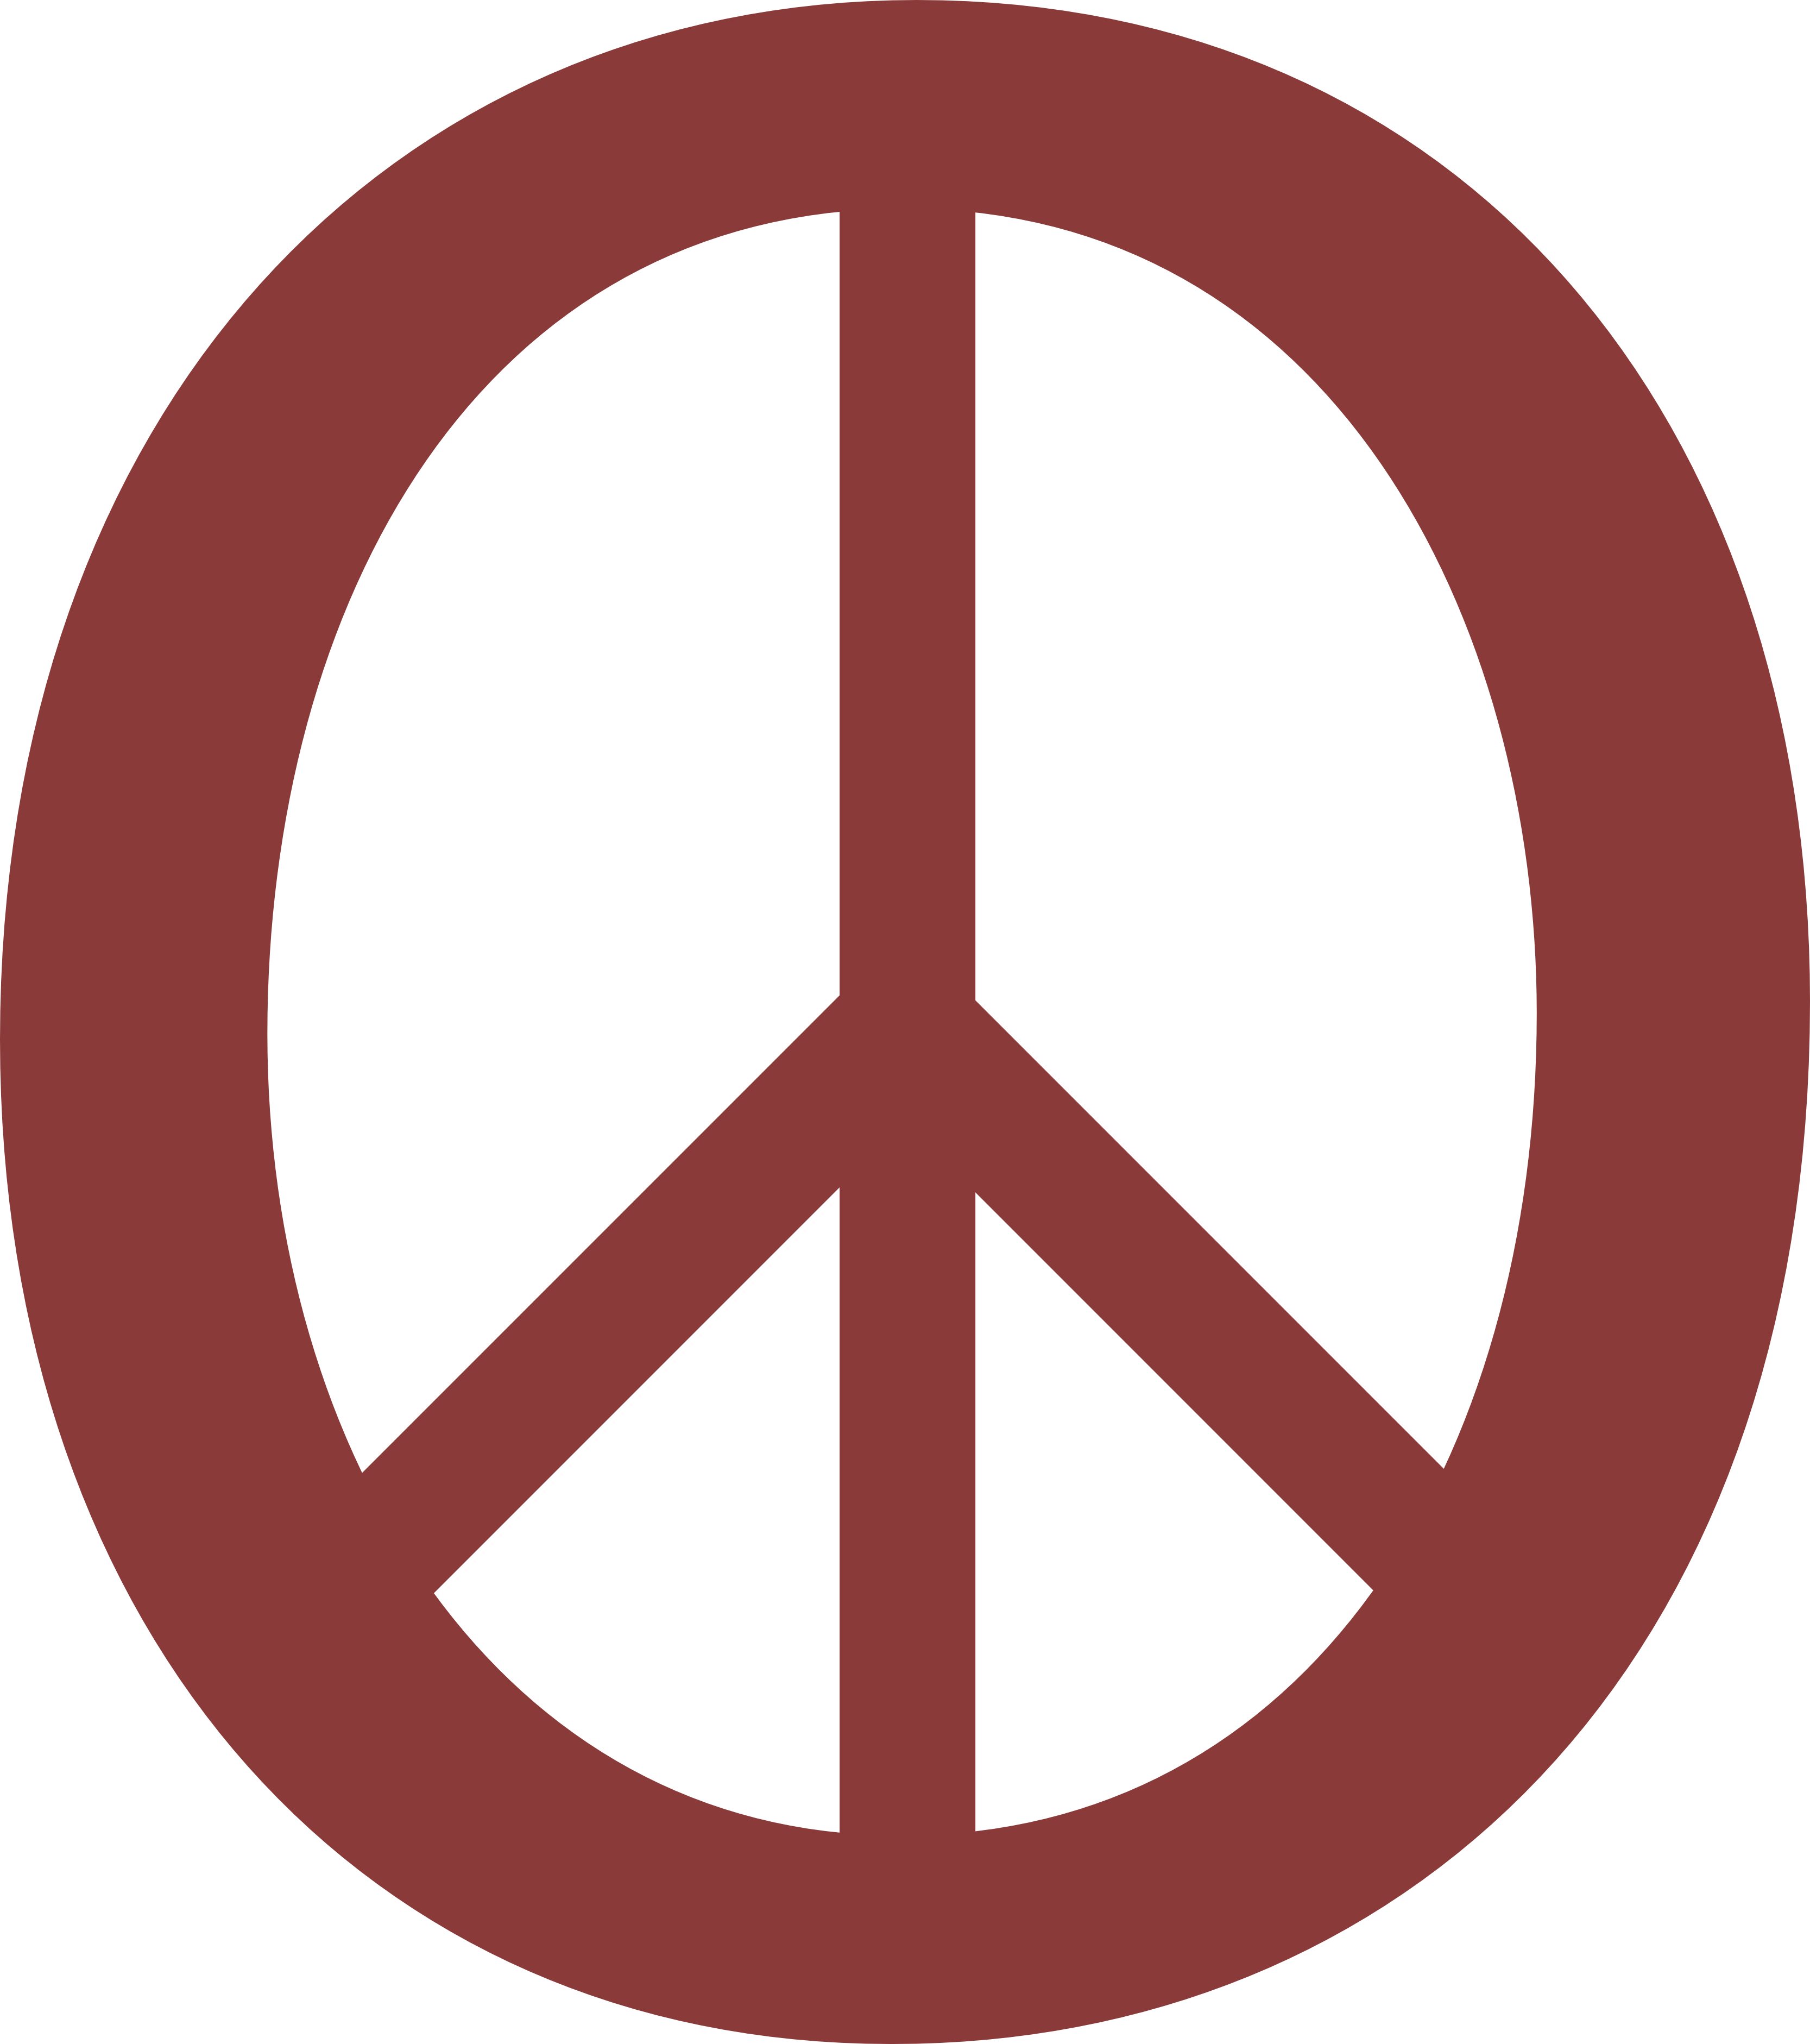 Rx Symbol Clip Art Indian Symbols - Peace Symbols - Png Download (3333x3763), Png Download